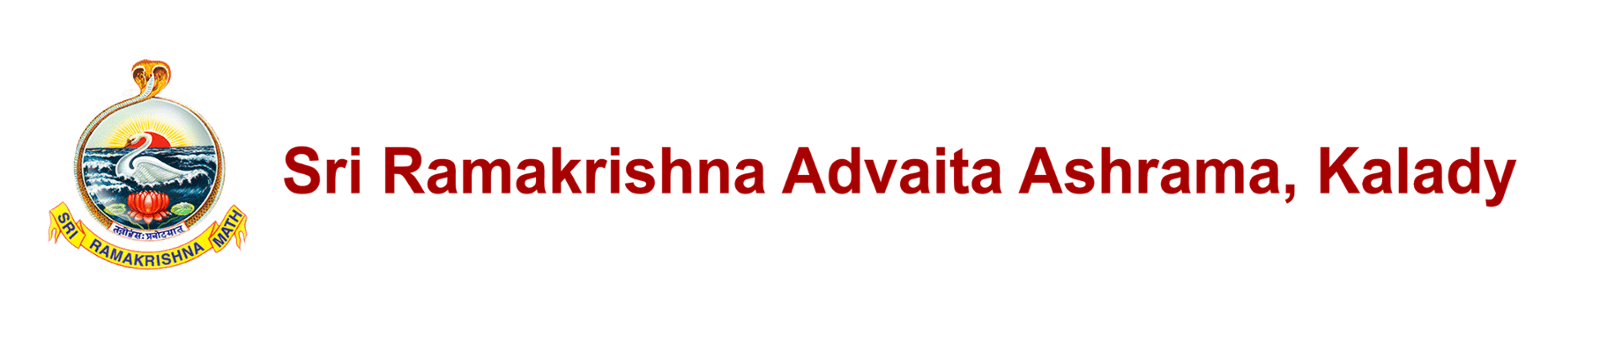 Sri Ramakrishna Advaita Ashrama